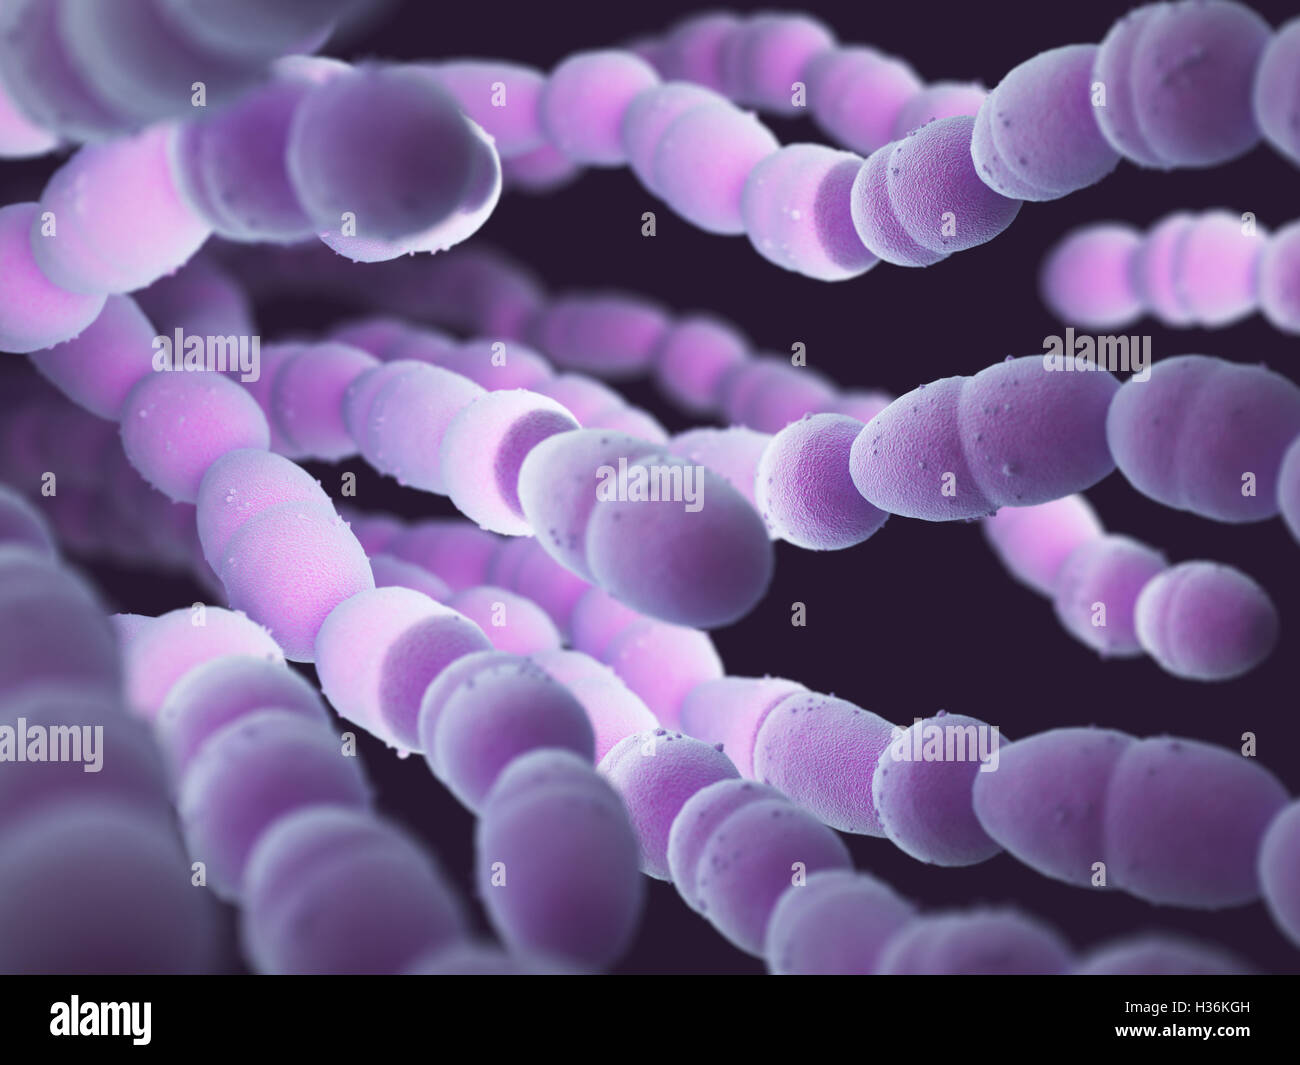 Streptococcus pneumoniae o neumococo, es una bacteria gram-positivas responsable de muchos tipos de infecciones neumocócicas. Foto de stock